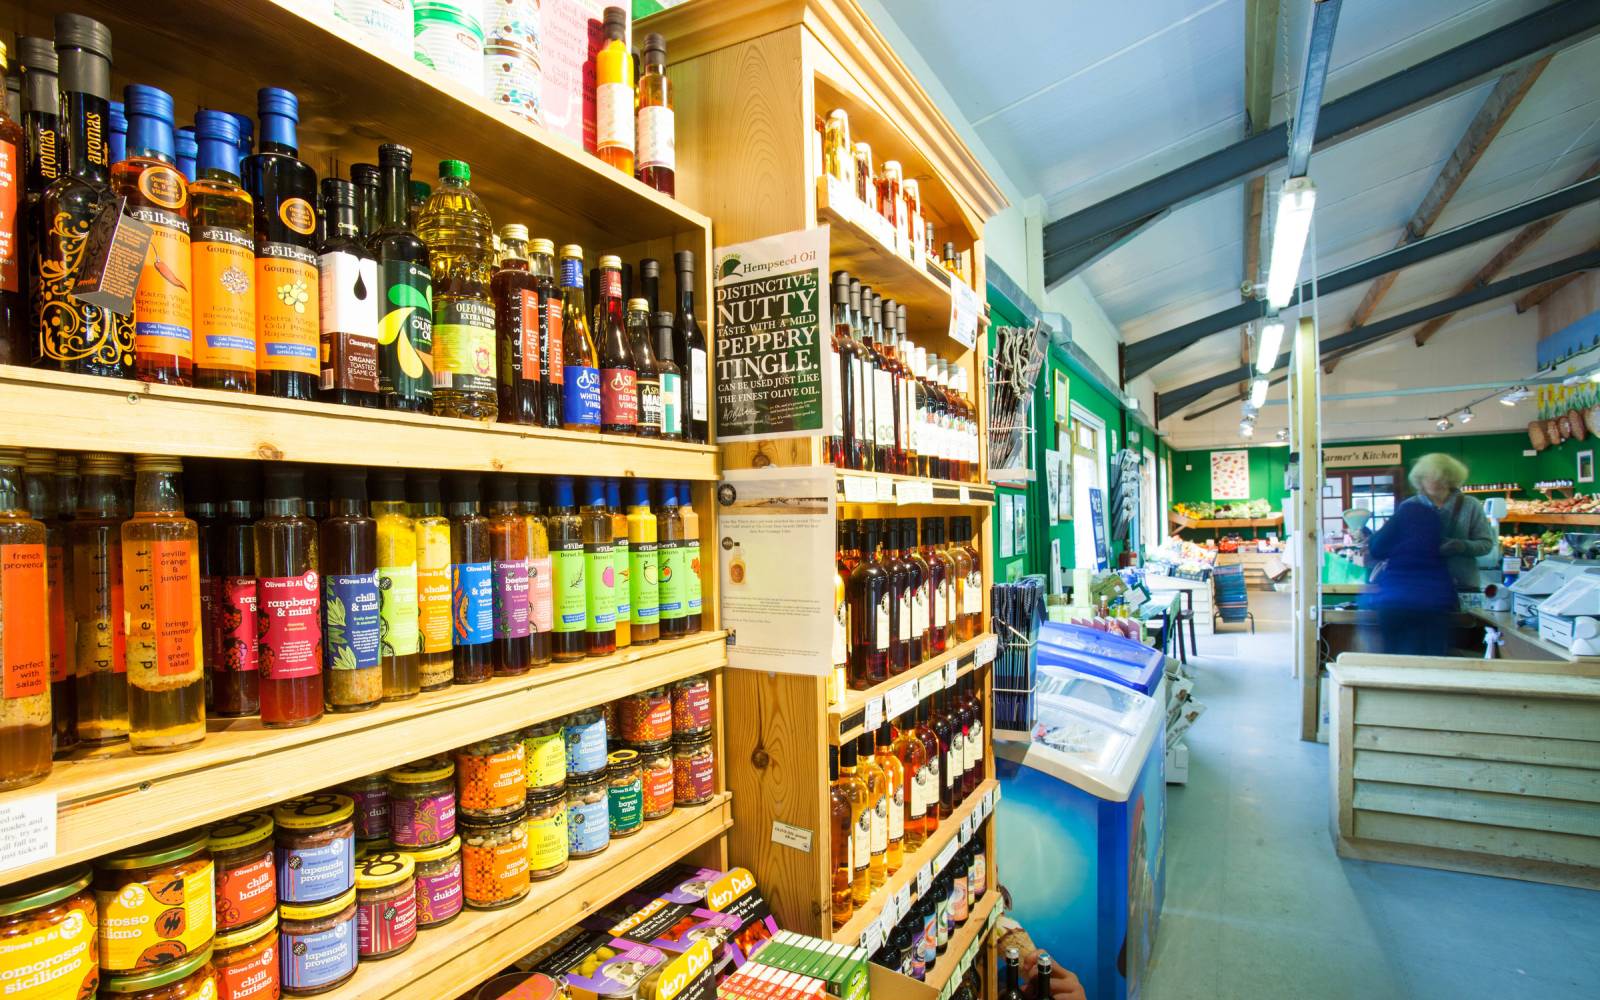 GESELL un negozio di alimenti biologici nel sud dell'Inghilterra